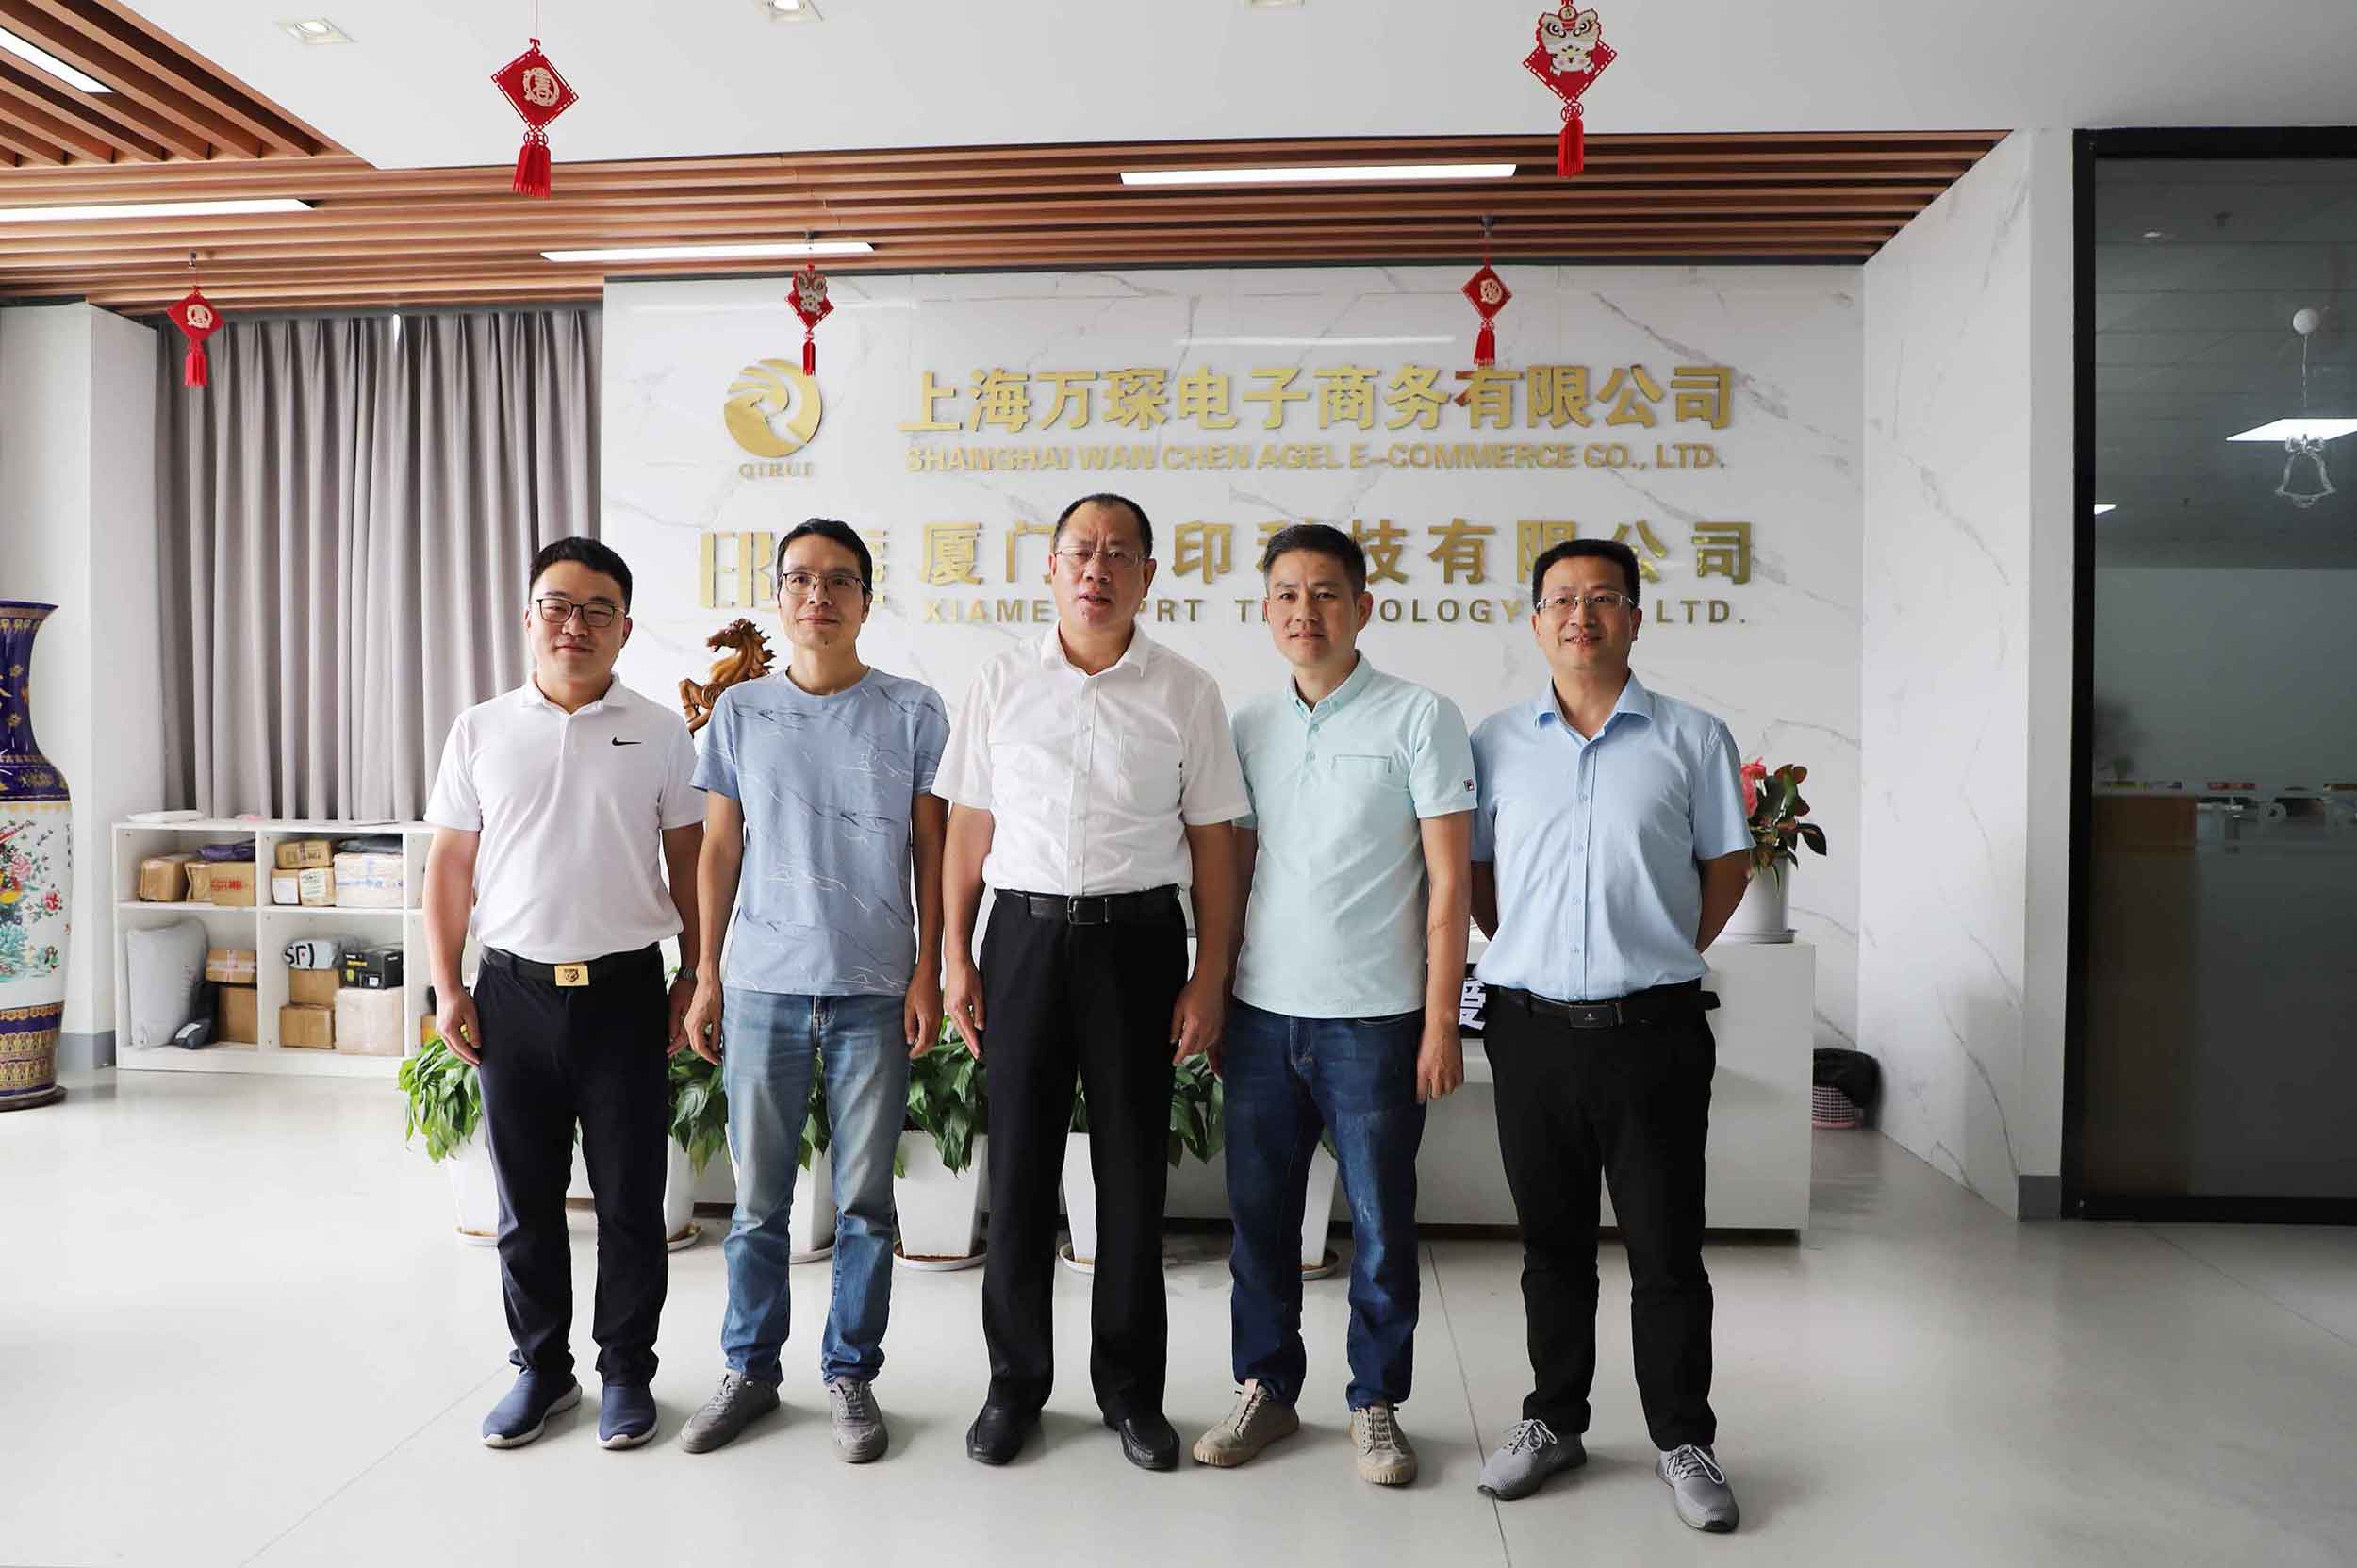 قدم تشانغ يي قونغ ، نائب سكرتير لجنة الحزب لبلدية شيامن ، أبحاث تكنولوجيا IPRT